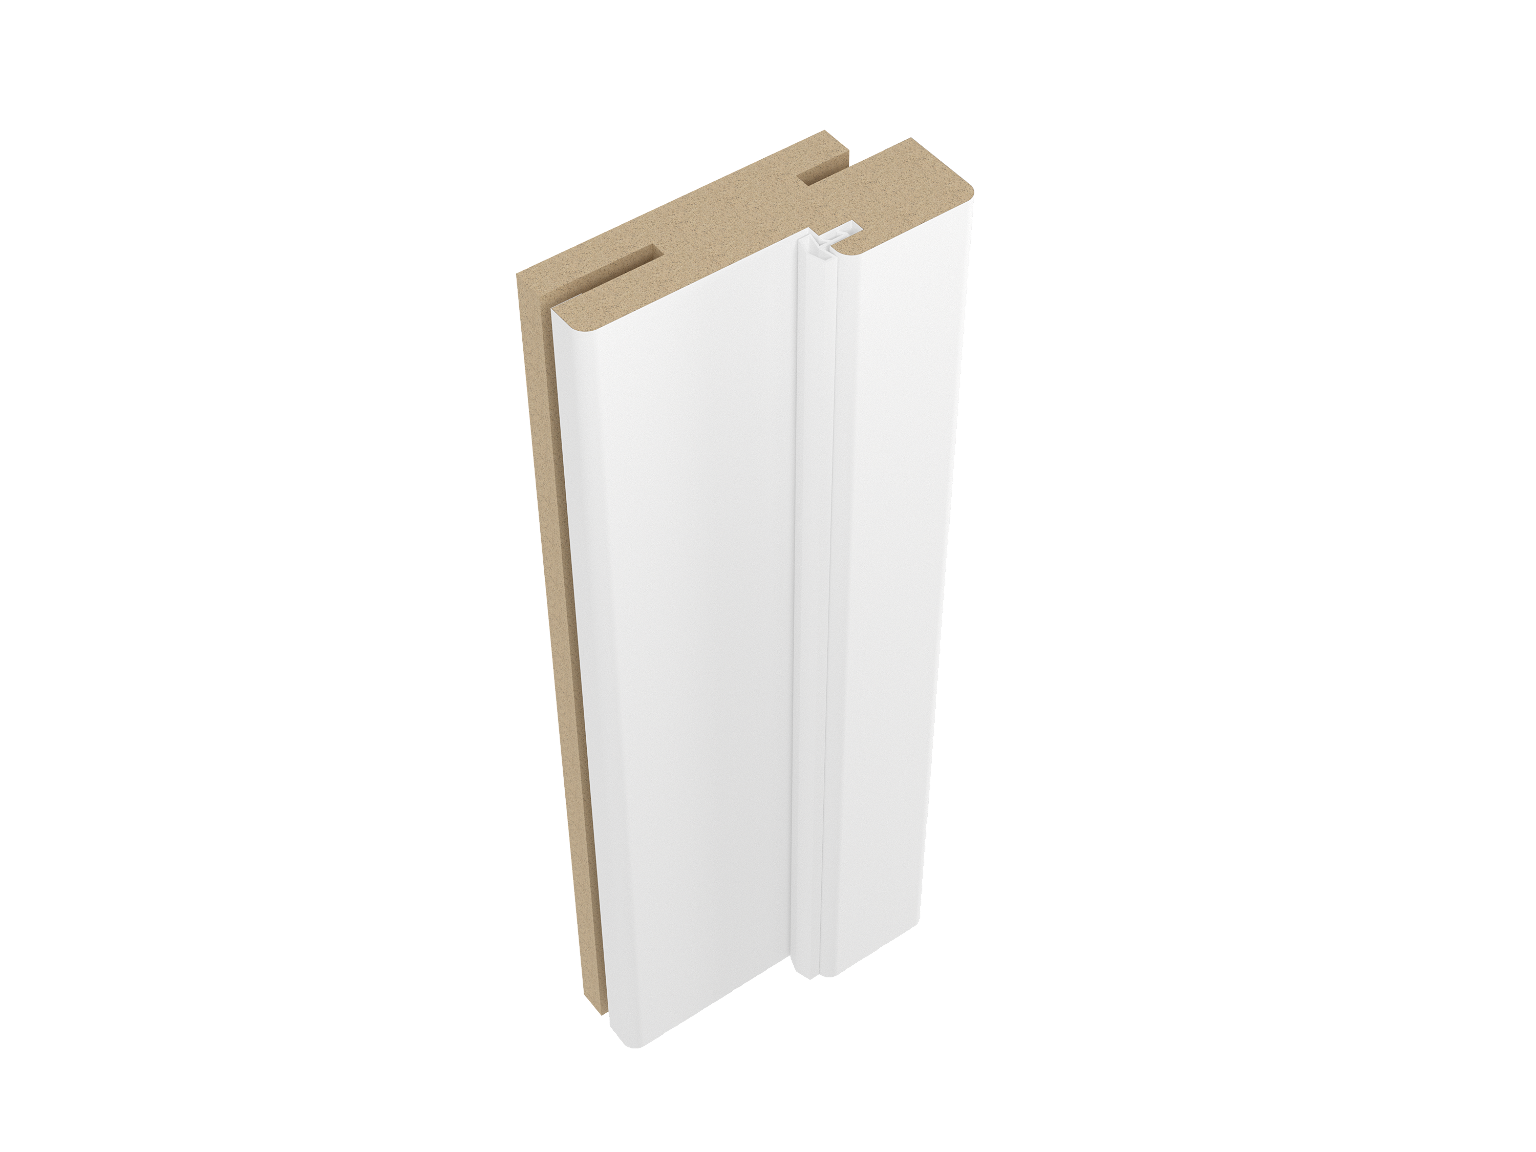 Durų staktos komplektas baltos spalvos dažytoms durims, 2,5 vnt., 7,5 x 3,4 x 210 cm